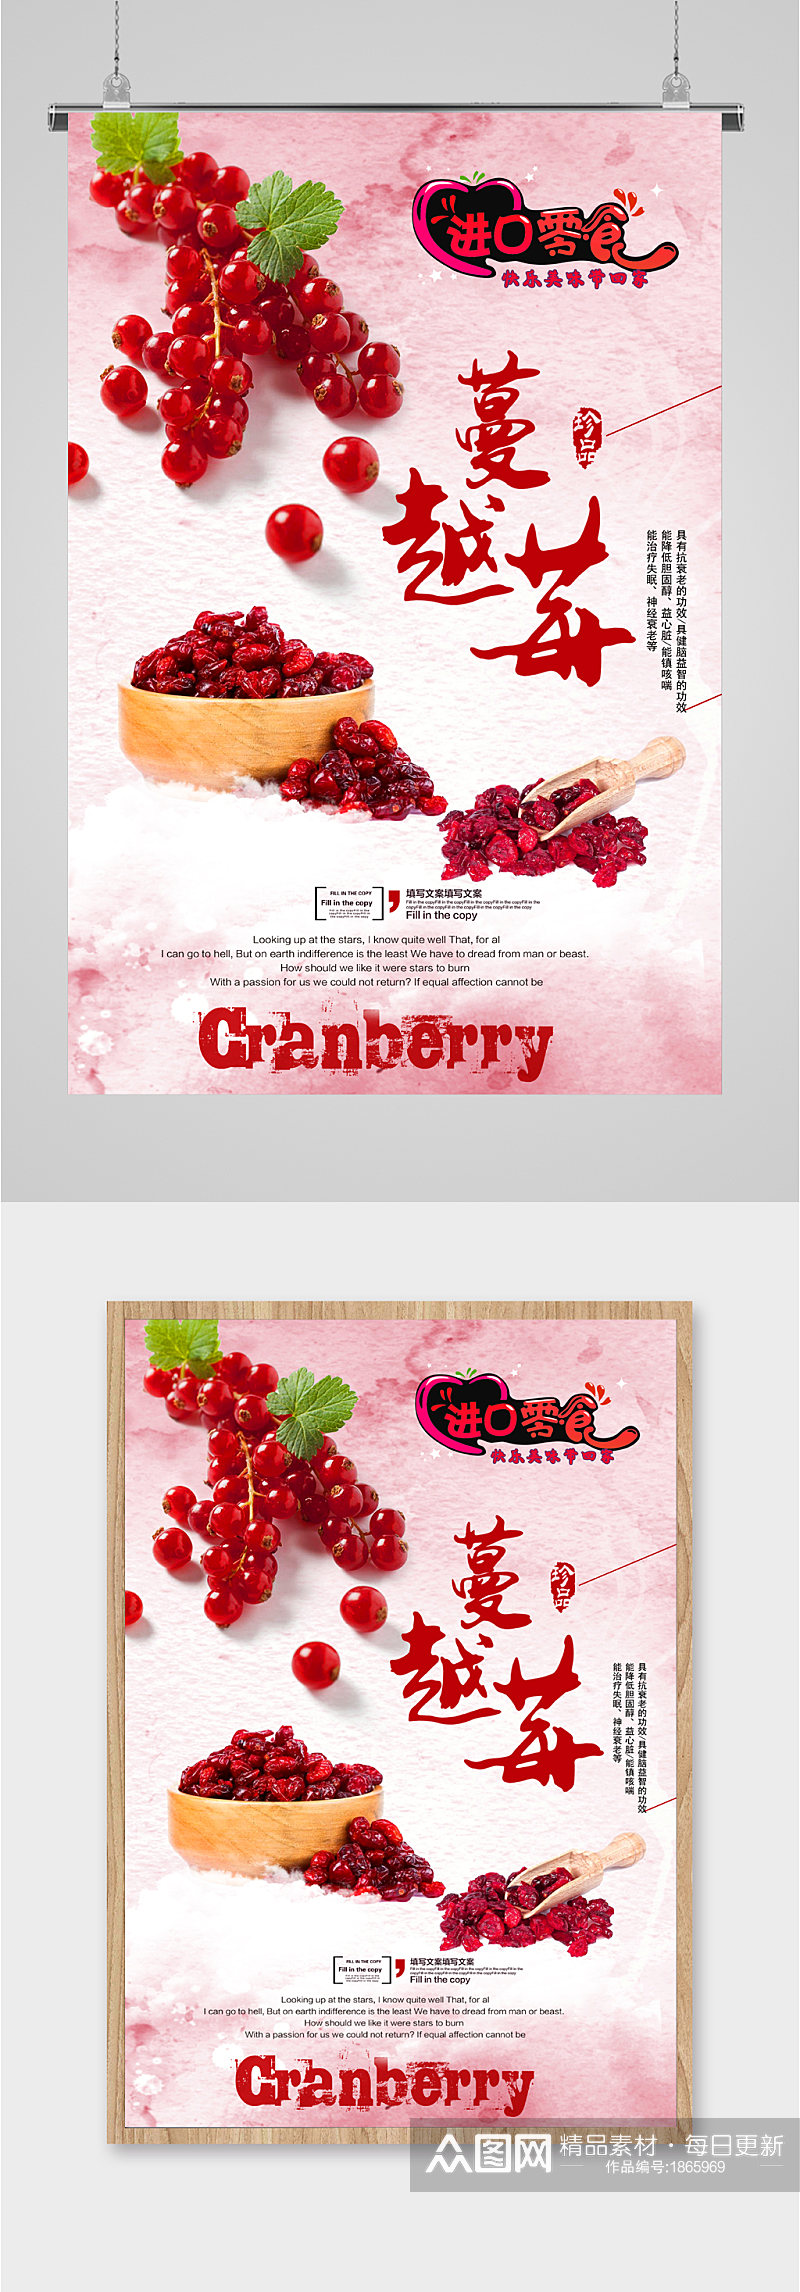 蔓越莓进口美食水果素材